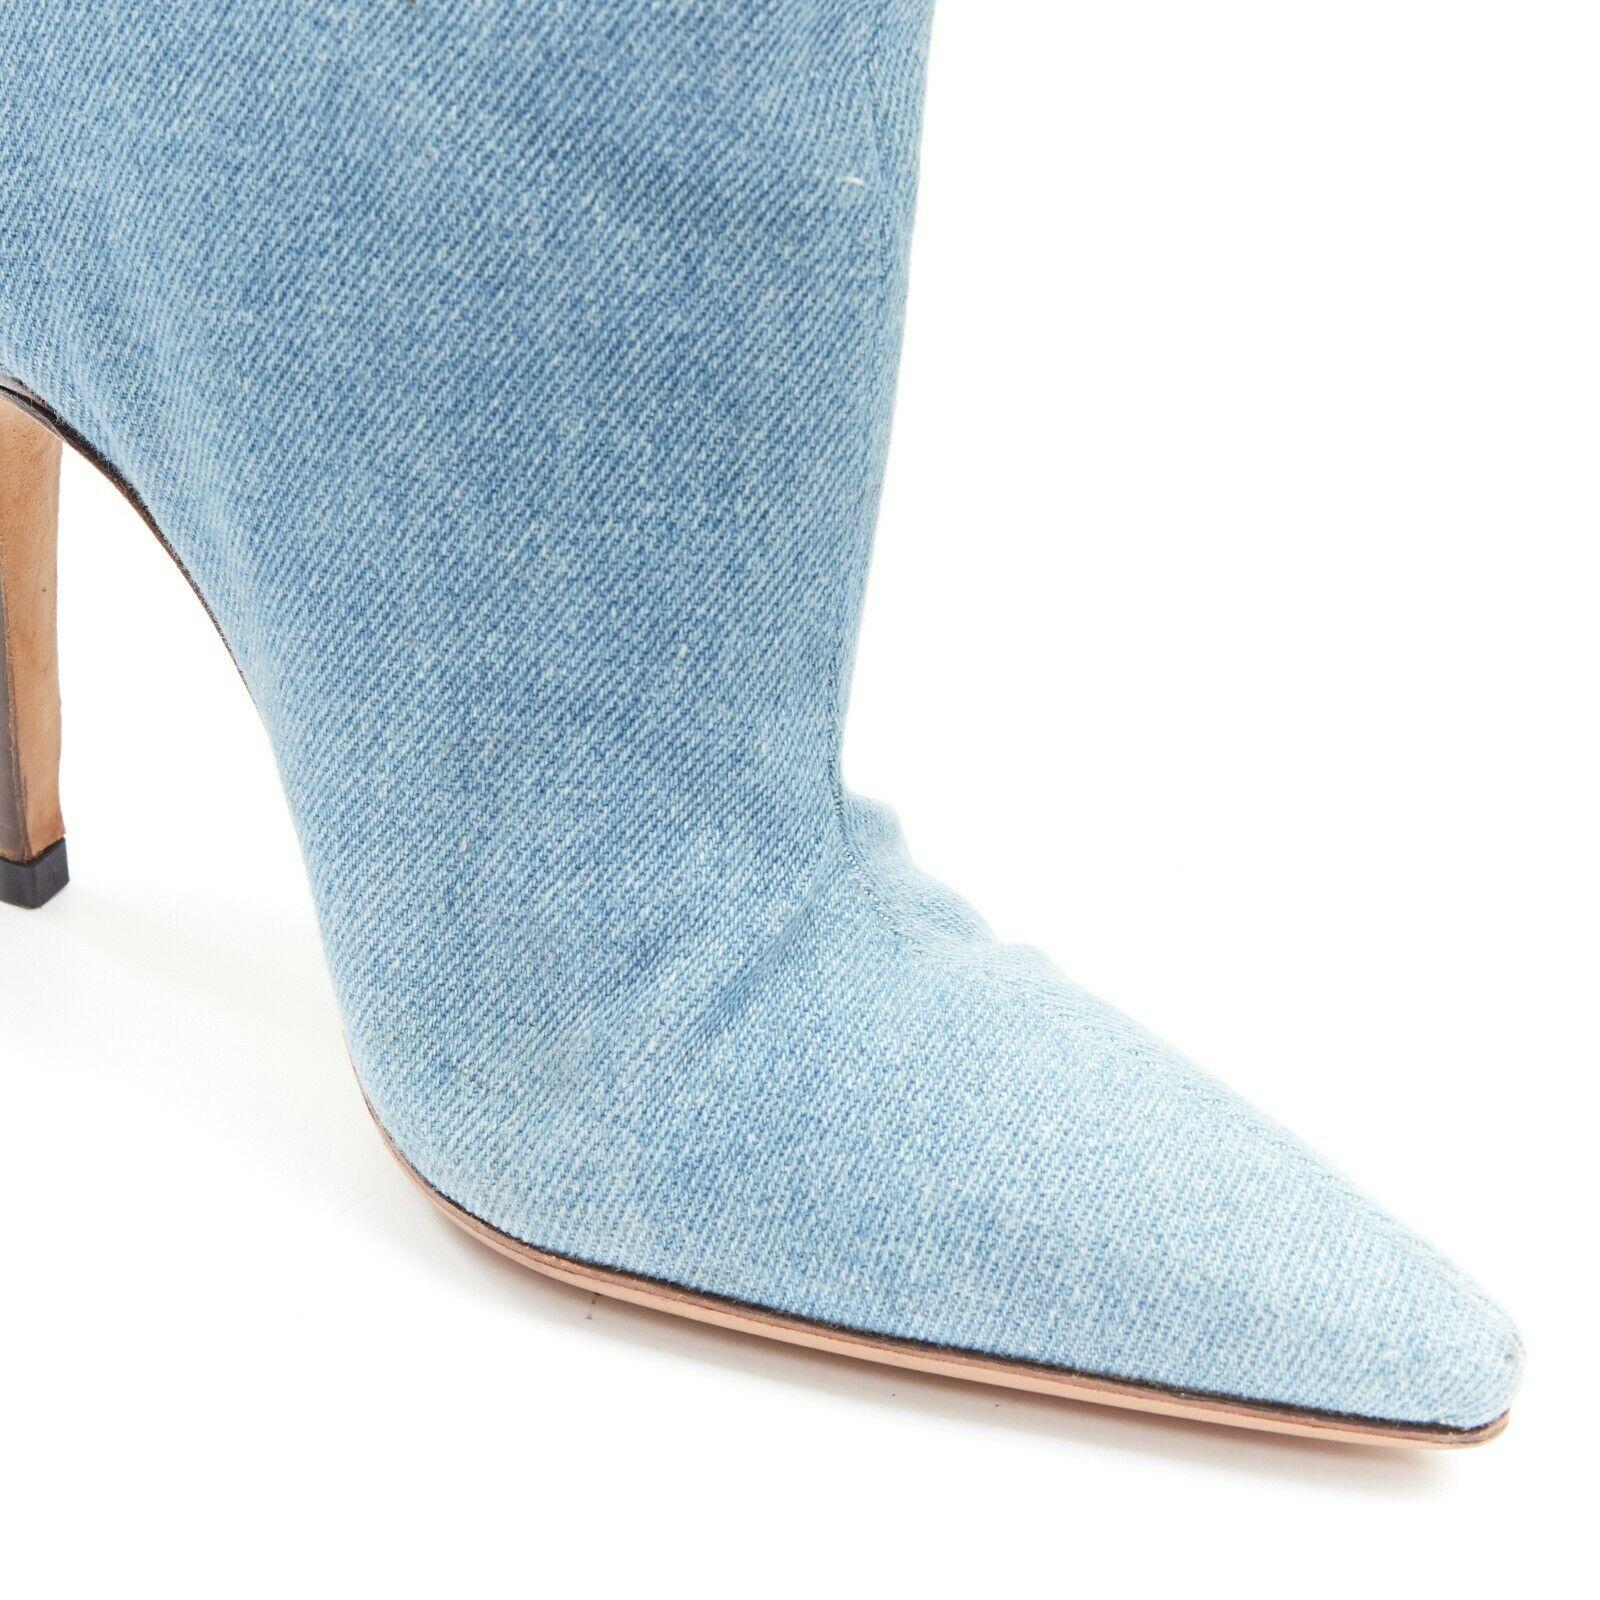 Women's MANOLO BLAHNIK light blue denim pointed toe high heel ankle bootie EU38